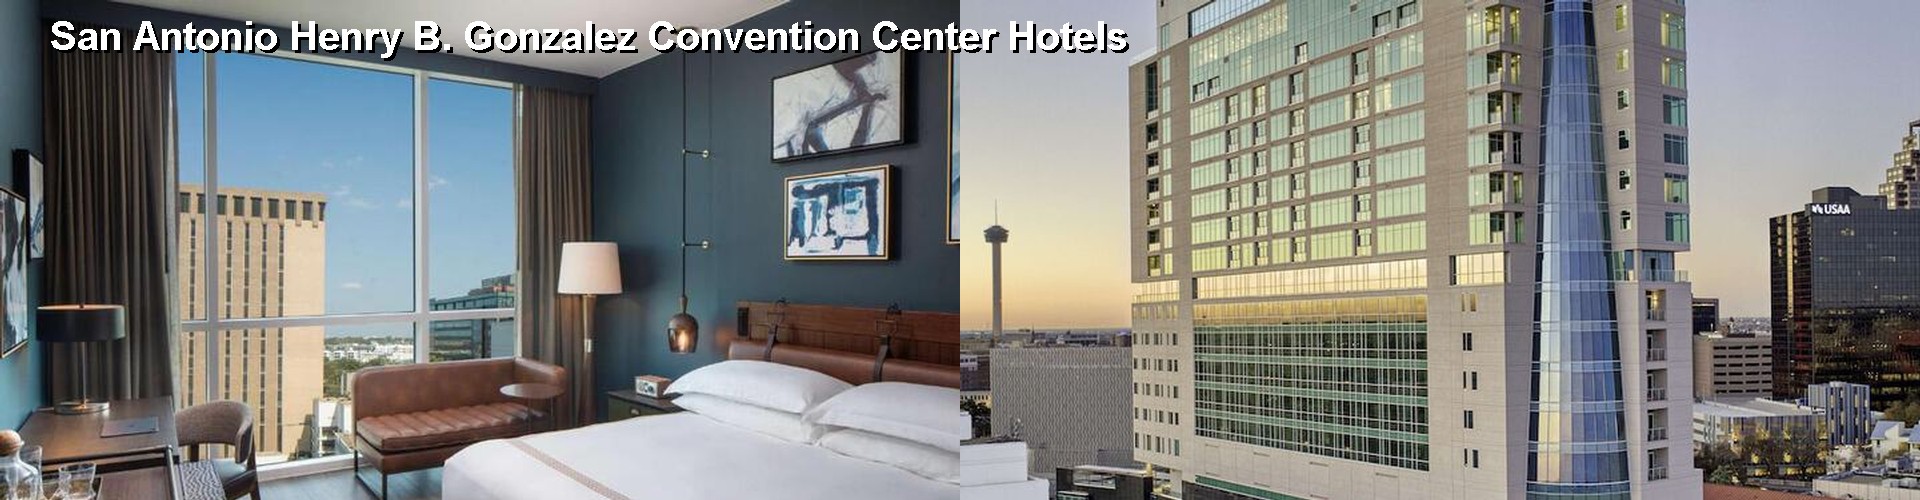 5 Best Hotels near San Antonio Henry B. Gonzalez Convention Center